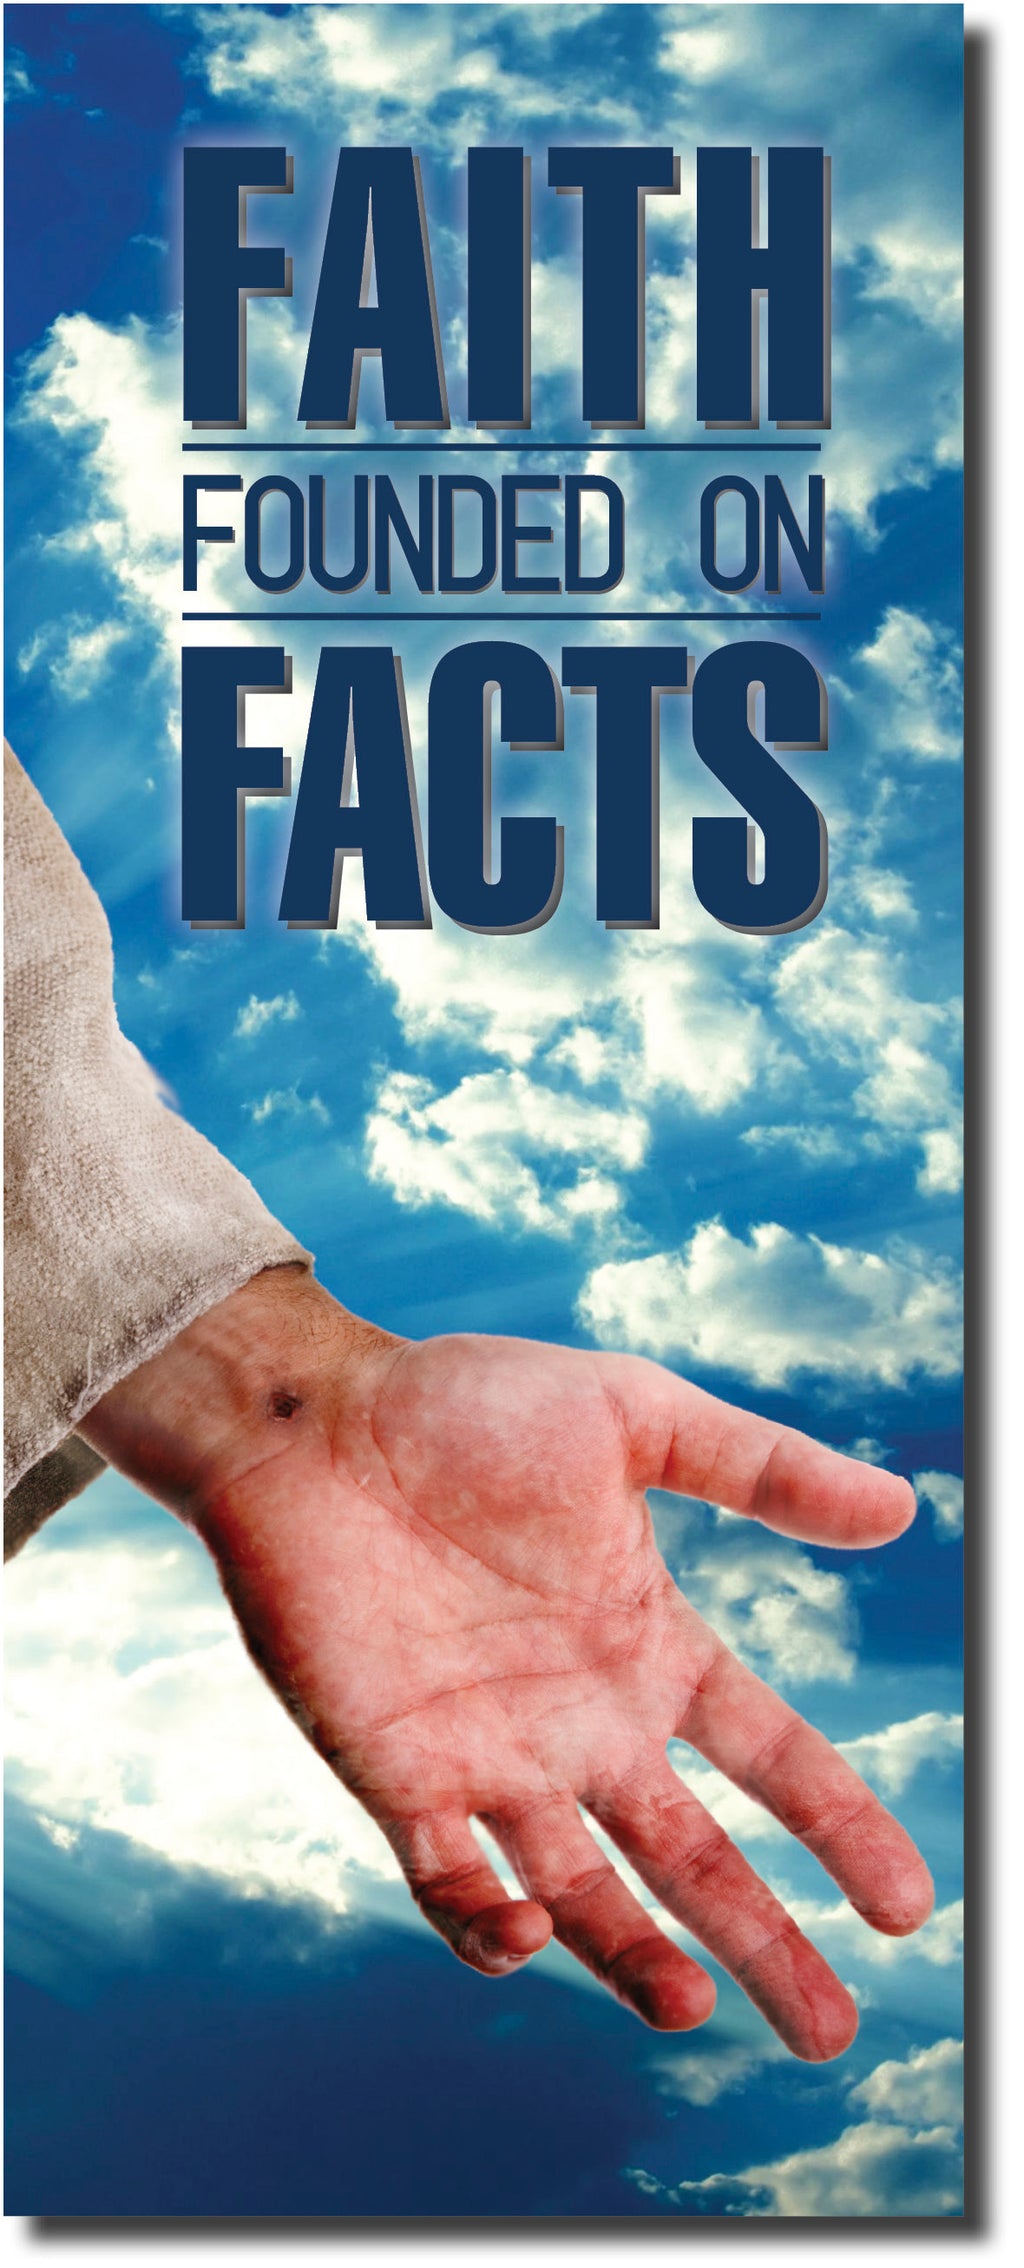 Faith Founded on Facts